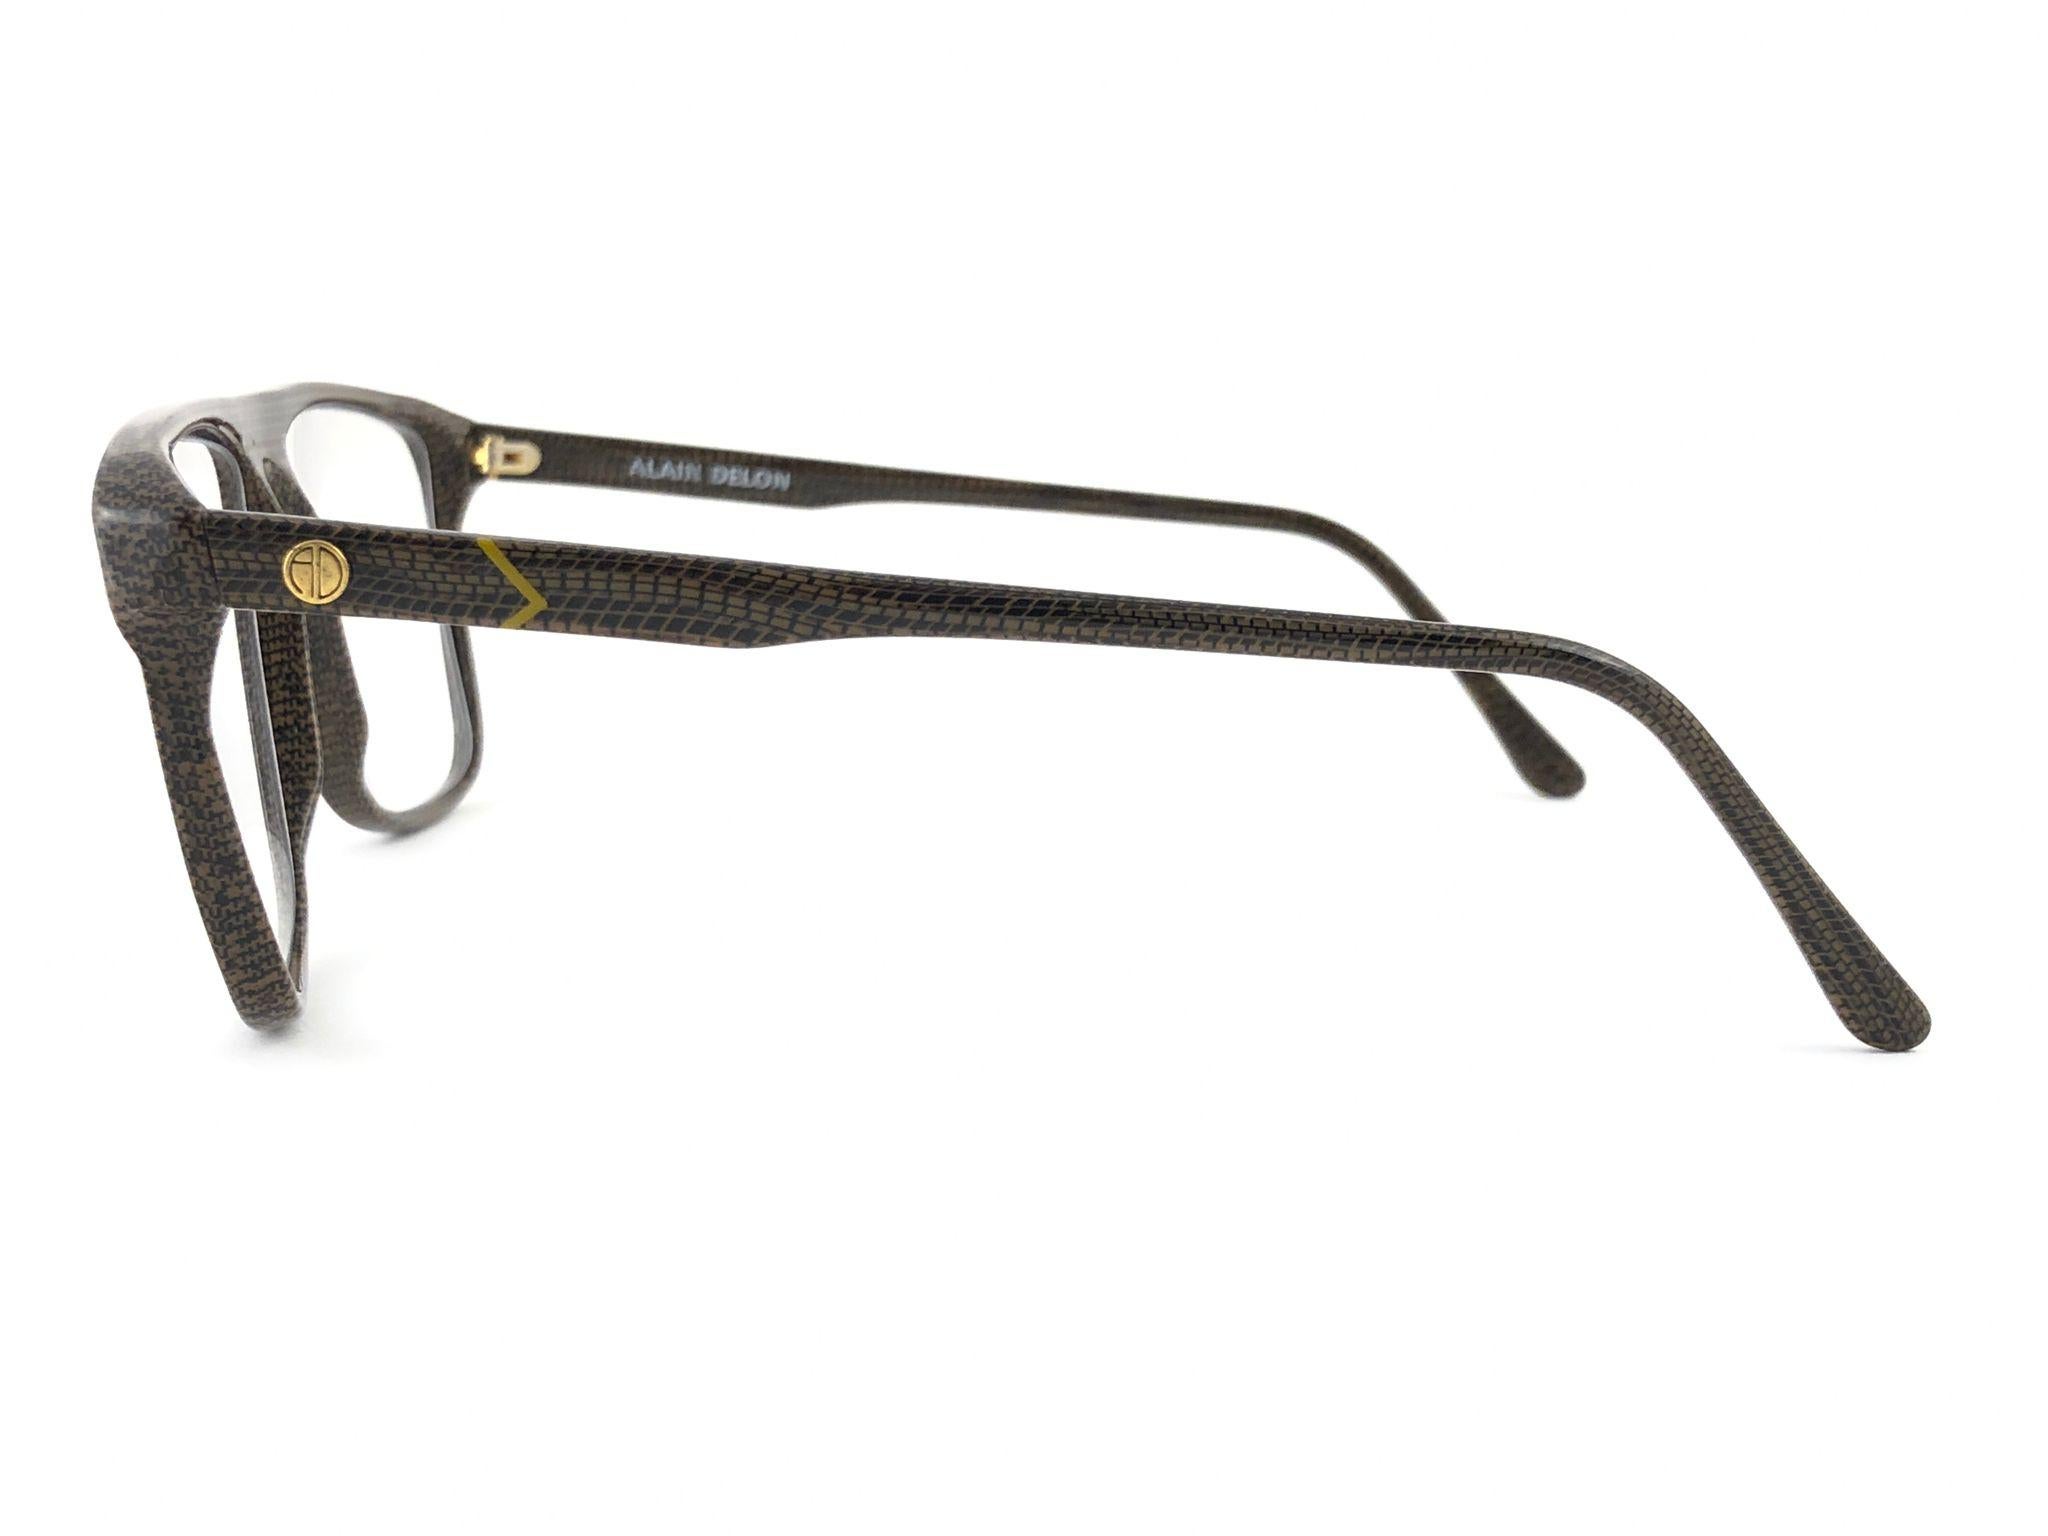 Gris Alain Delon Thesee 123, lunettes de soleil vintage neuves en forme de serpent motif RX, Italie, 1990 en vente